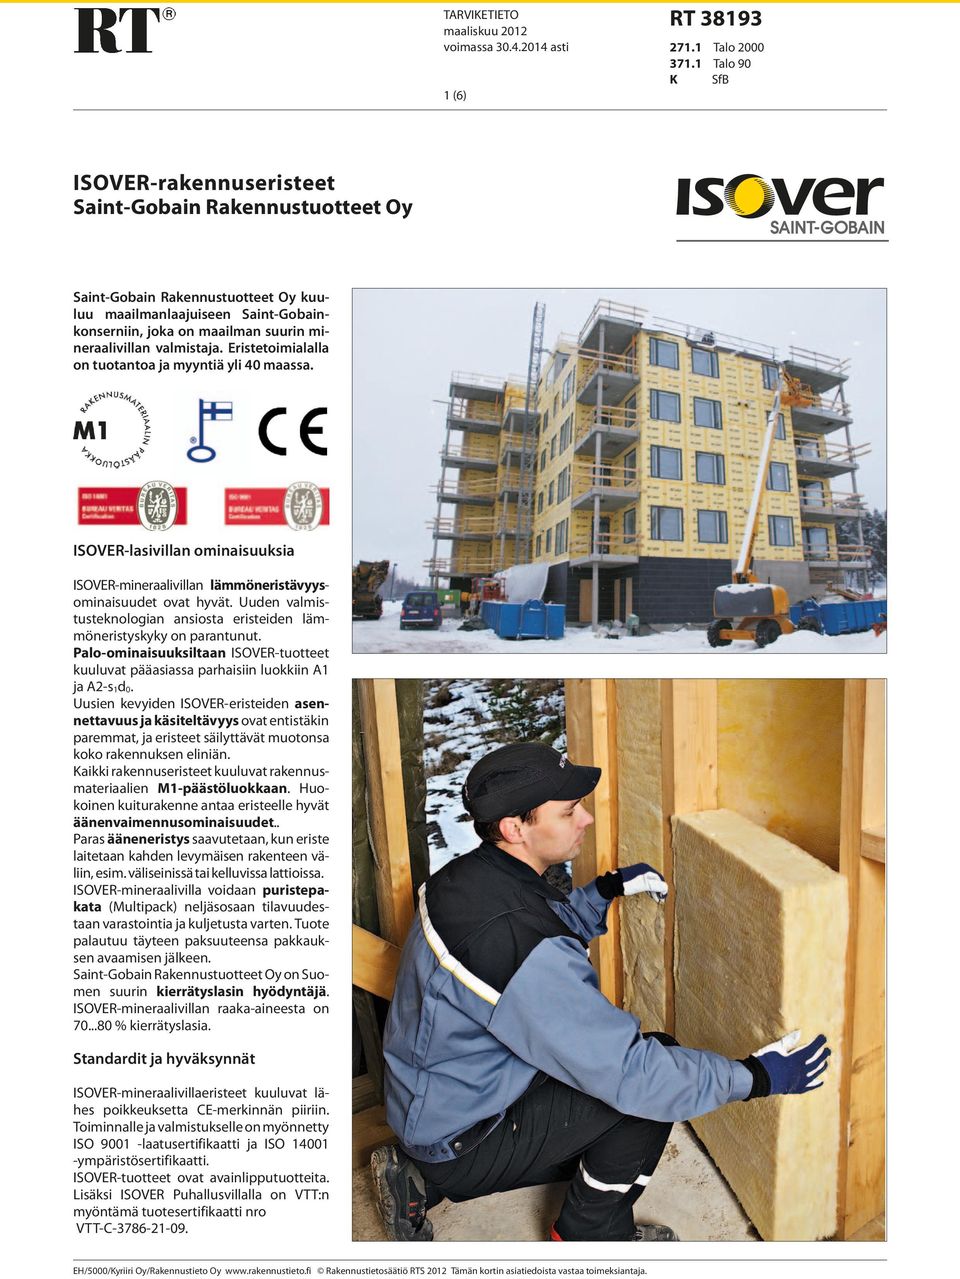 valmistaja. Eristetoimialalla on tuotantoa ja myyntiä yli 40 maassa. ISOVER-lasivillan ominaisuuksia ISOVER-mineraalivillan lämmöneristävyysominaisuudet ovat hyvät.